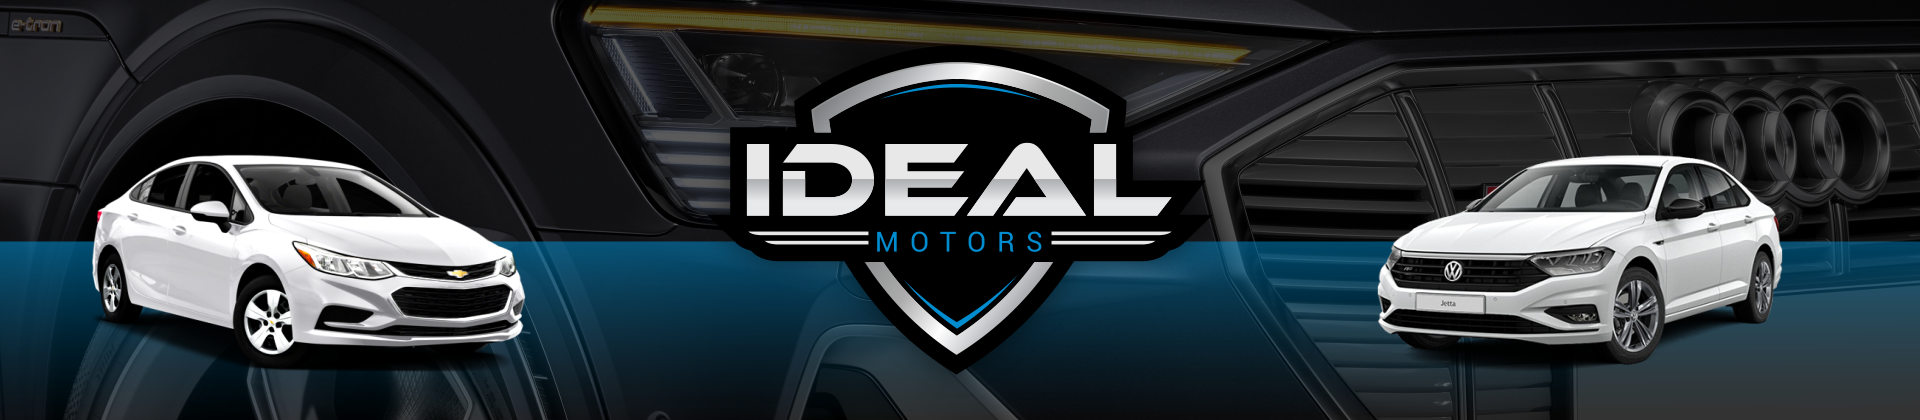 Ideal Motors